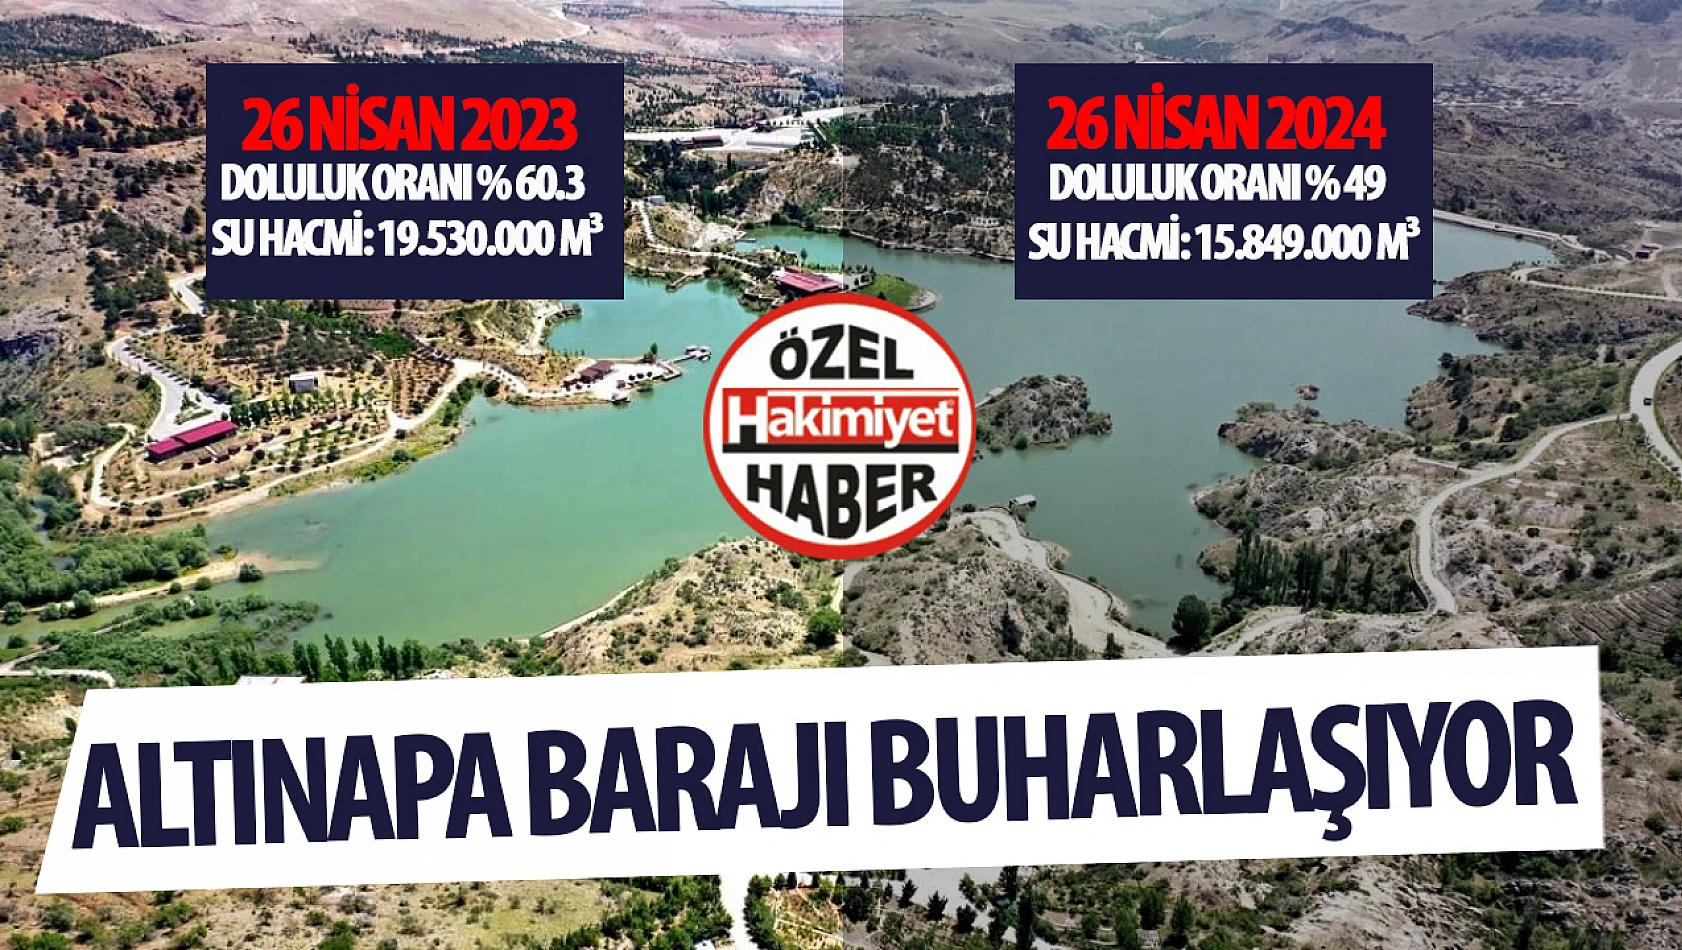 Konya'da Kuraklık Artıyor: Altınapa Barajı'nın Doluluk Oranı Düşüyor